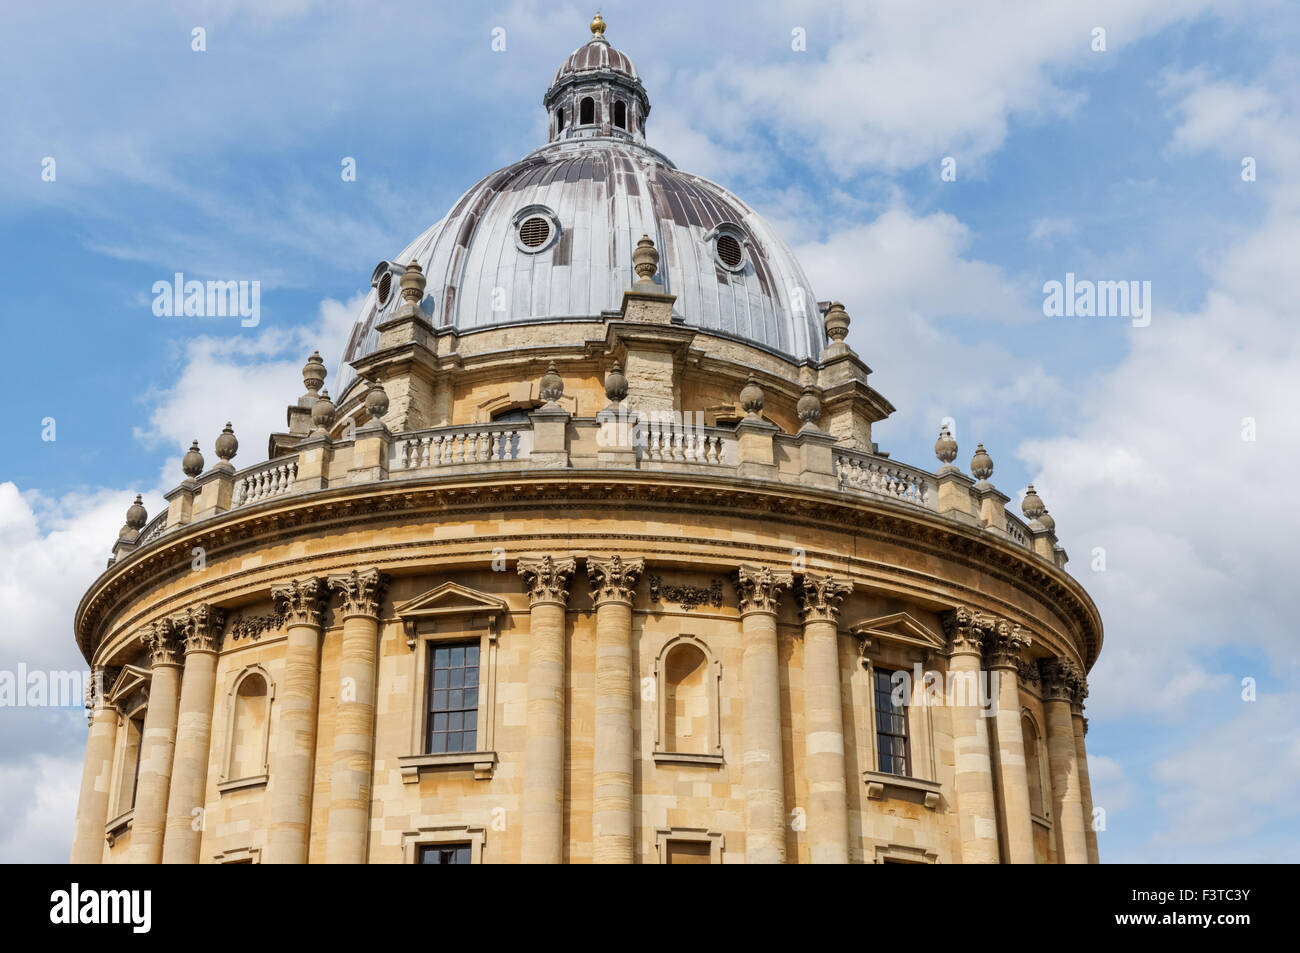 Die Radcliffe Camera in Oxford Oxfordshire England Vereinigtes Königreich UK Stockfoto